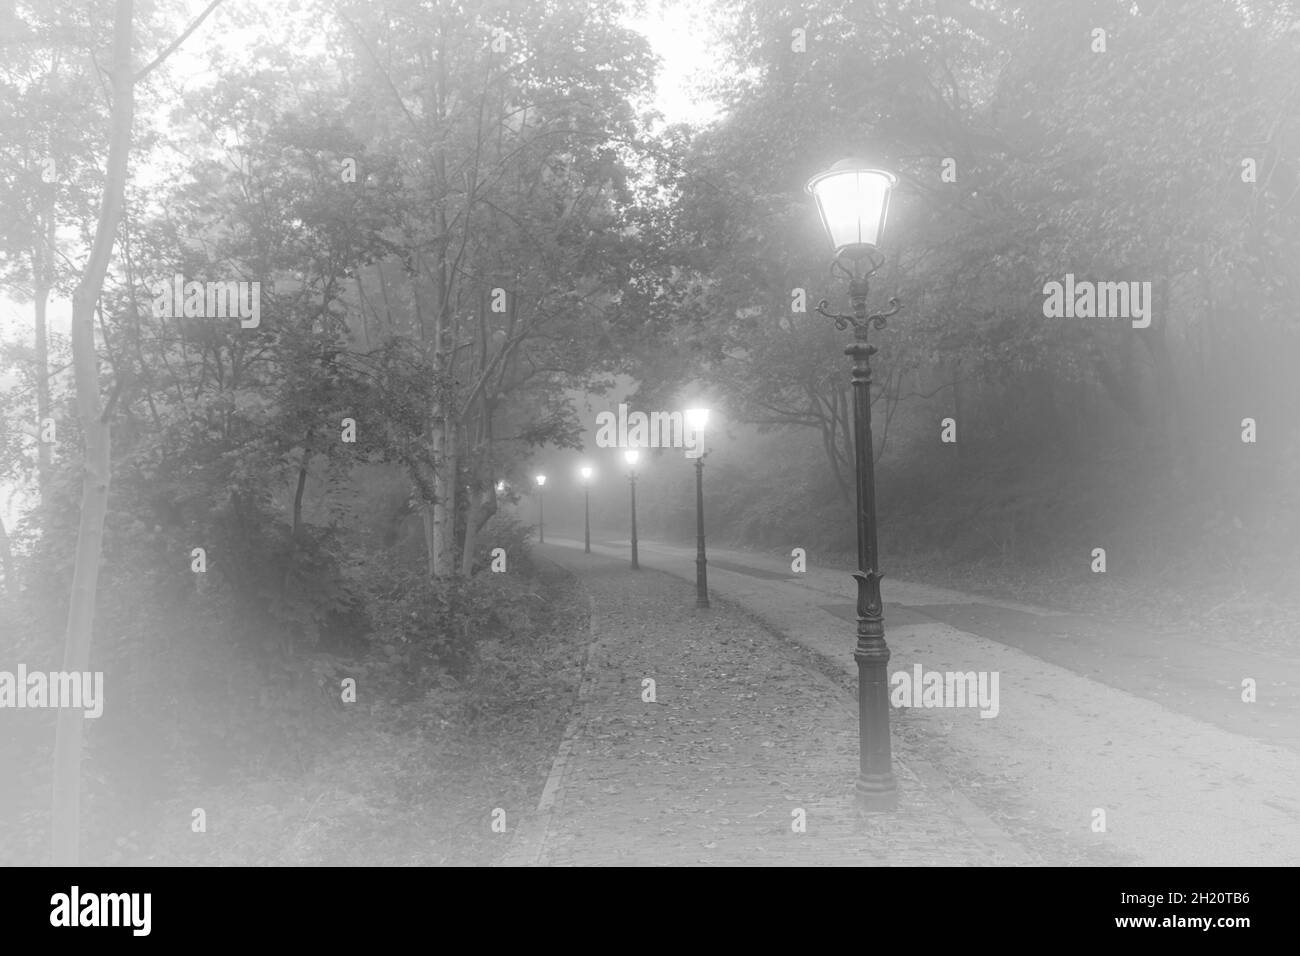 Schöner Blick auf eine Straße mit klassischen Straßenlaternen im Nebel. Alter Look. Schwarzweiß-Bild, weiße Vignettierung hinzugefügt. Stockfoto